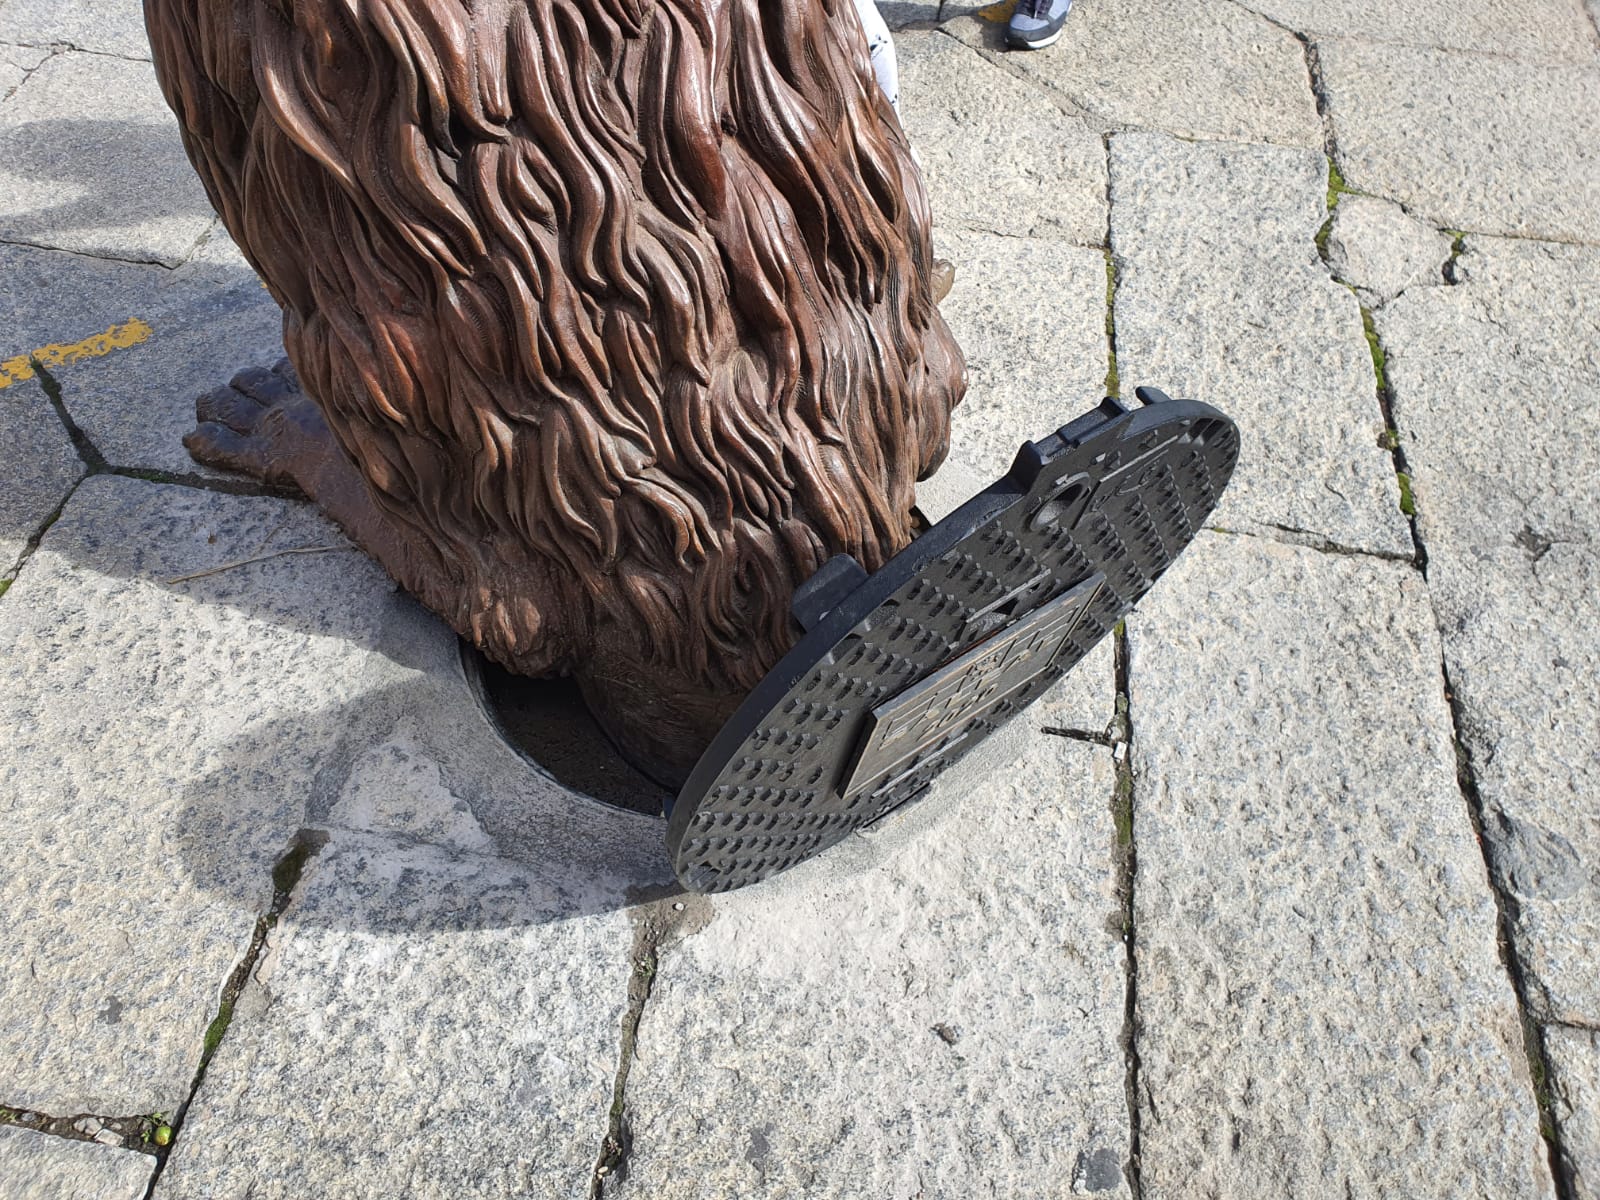 Escultura León saliendo de la alcantarilla